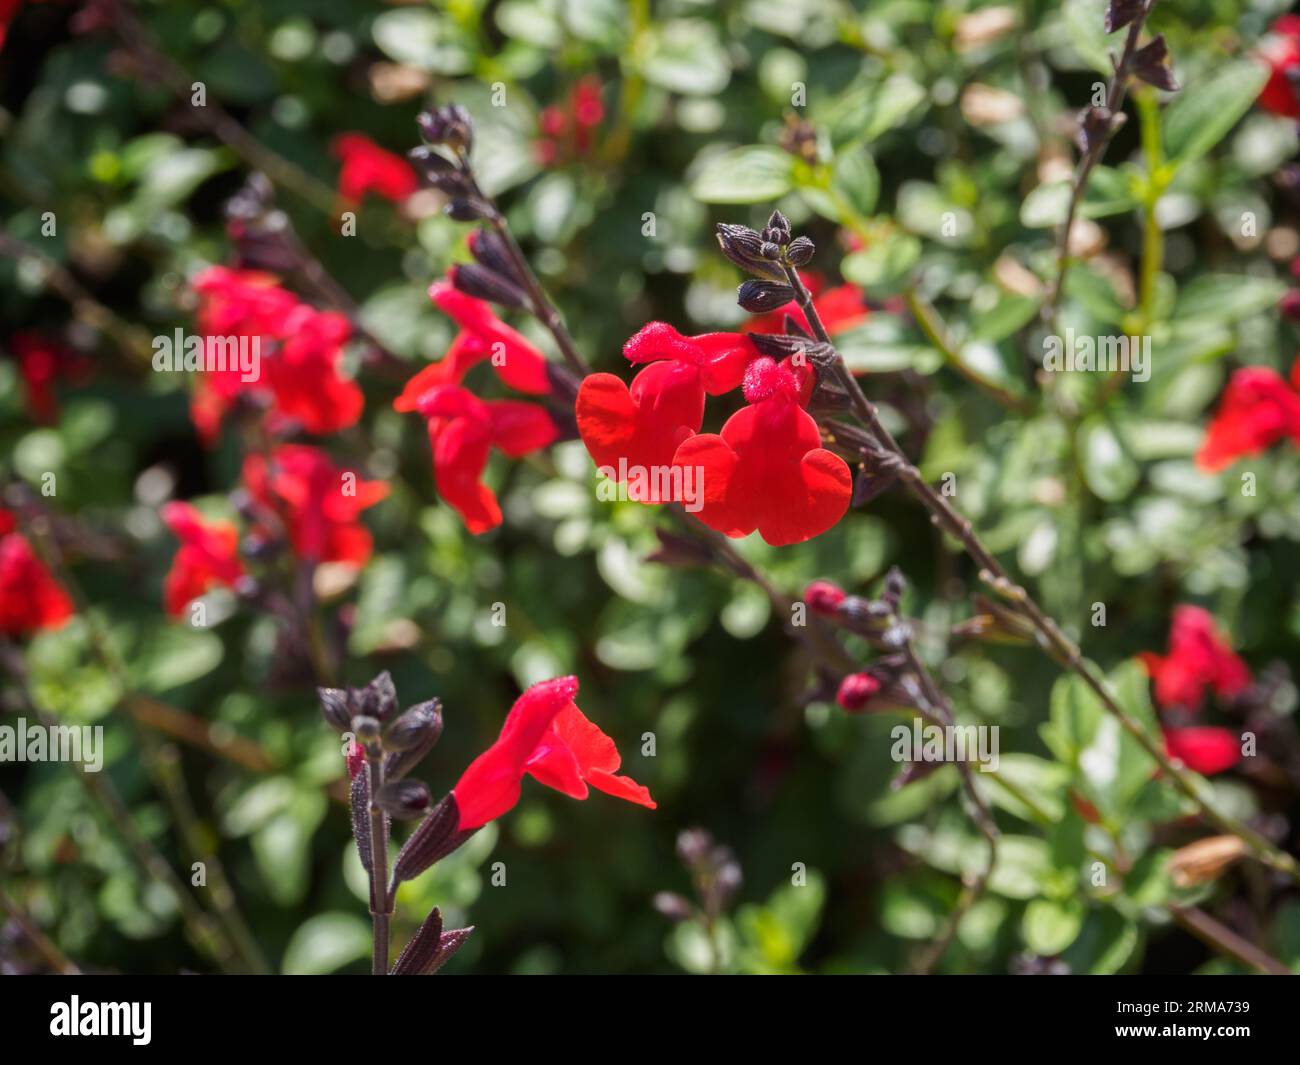 Salvia 'Royal Bumble' Stock Photo